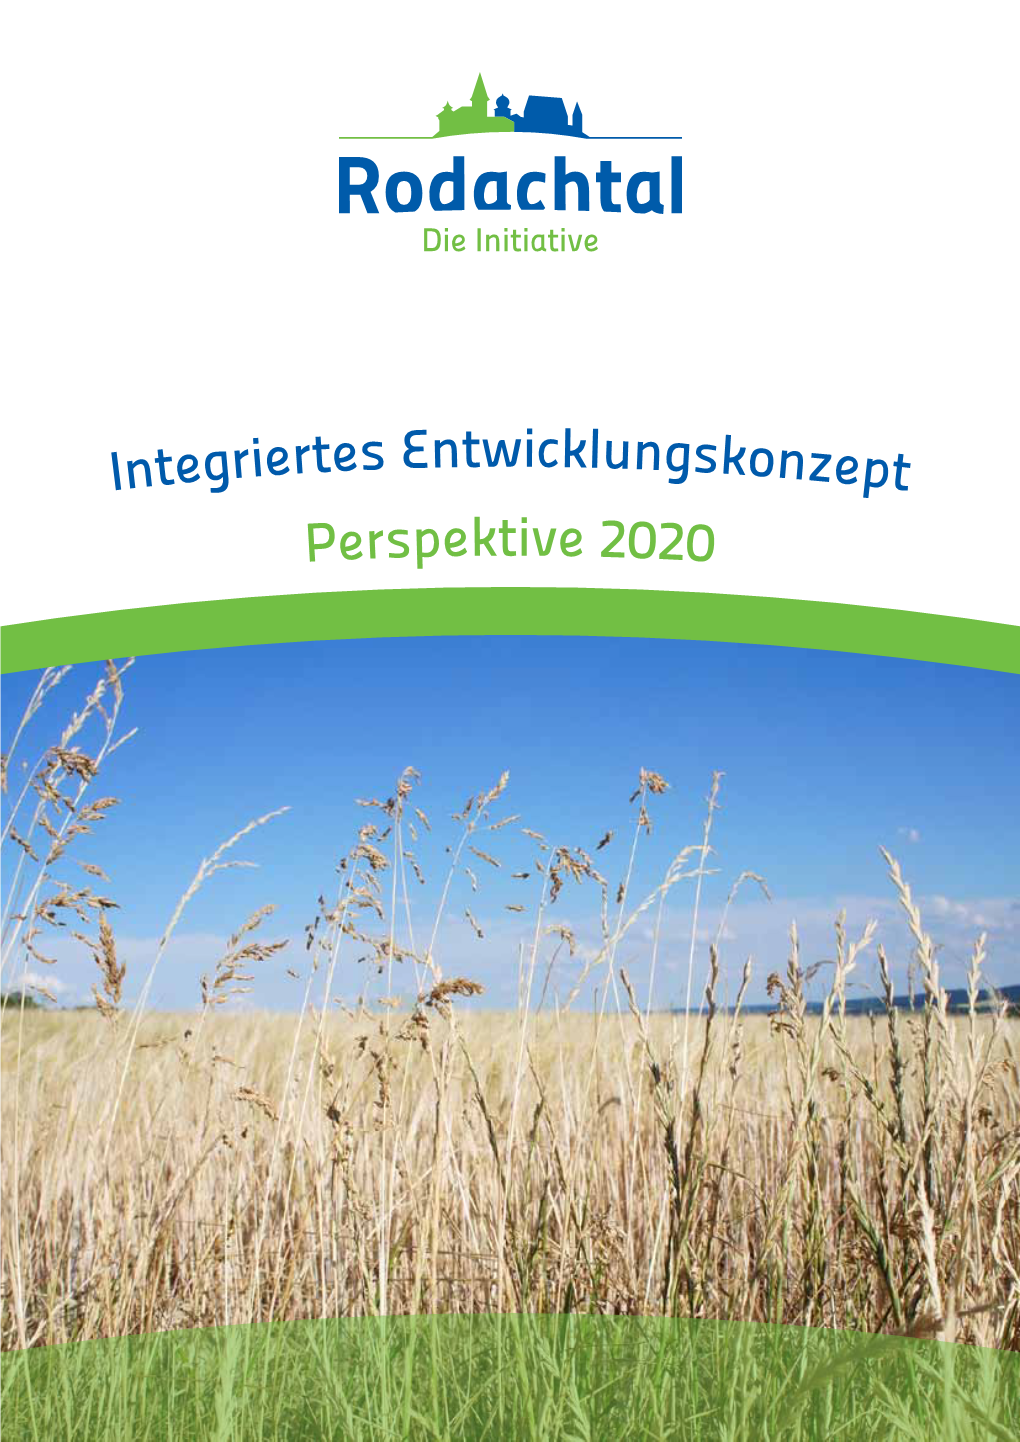 Integriertes Entwicklungskonzept Perspektive 2020 Integriertes Regionales Entwicklungskonzept 2014 Bis 2020 - Initiative Rodachtal